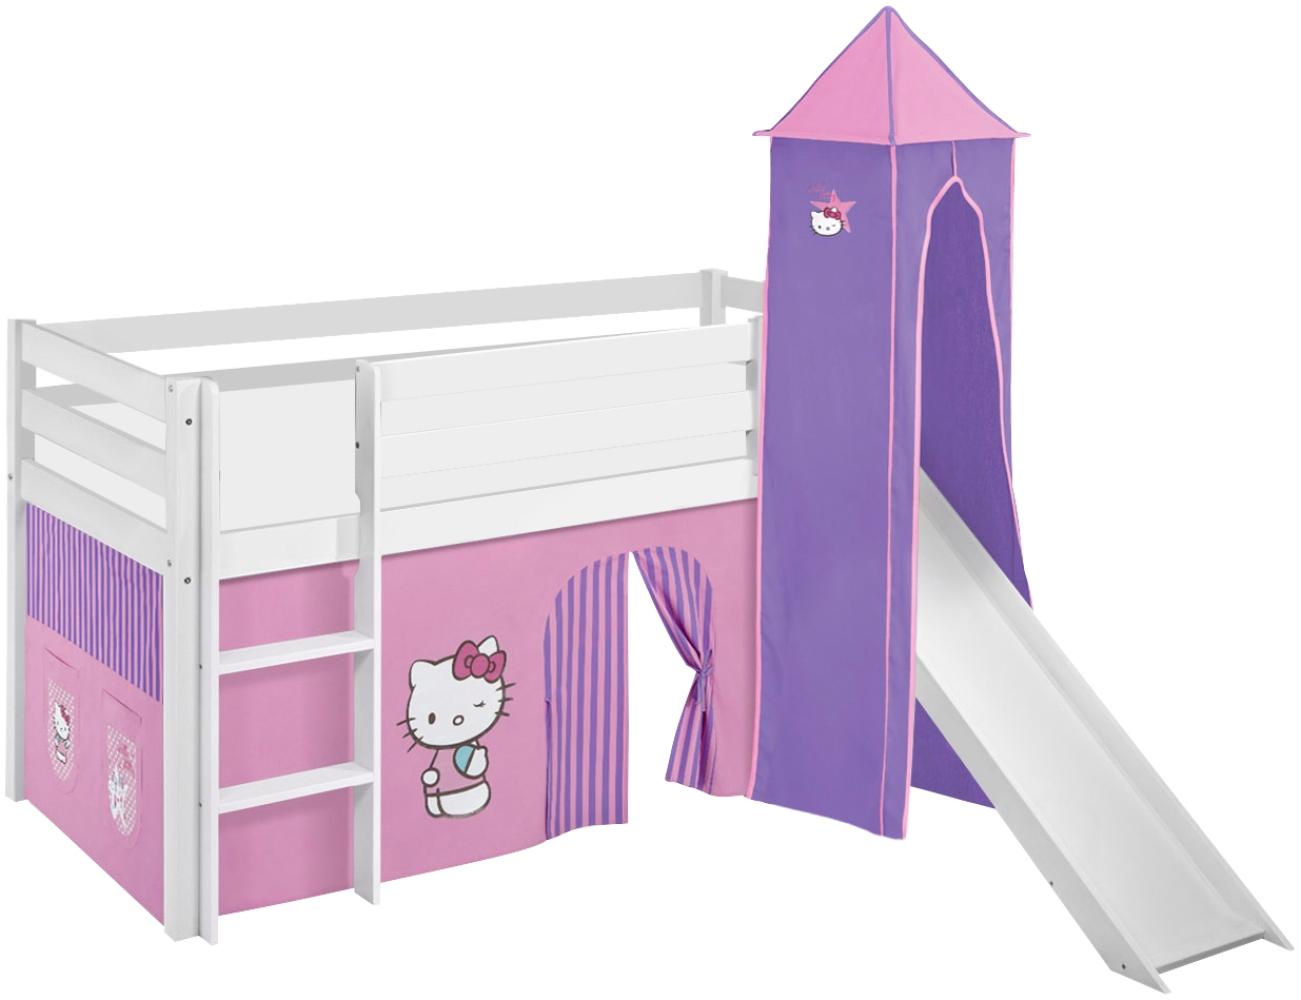 Lilokids 'Jelle' Spielbett 90 x 200 cm, Hello Kitty Lila, Kiefer massiv, mit Turm, Rutsche und Vorhang Bild 1